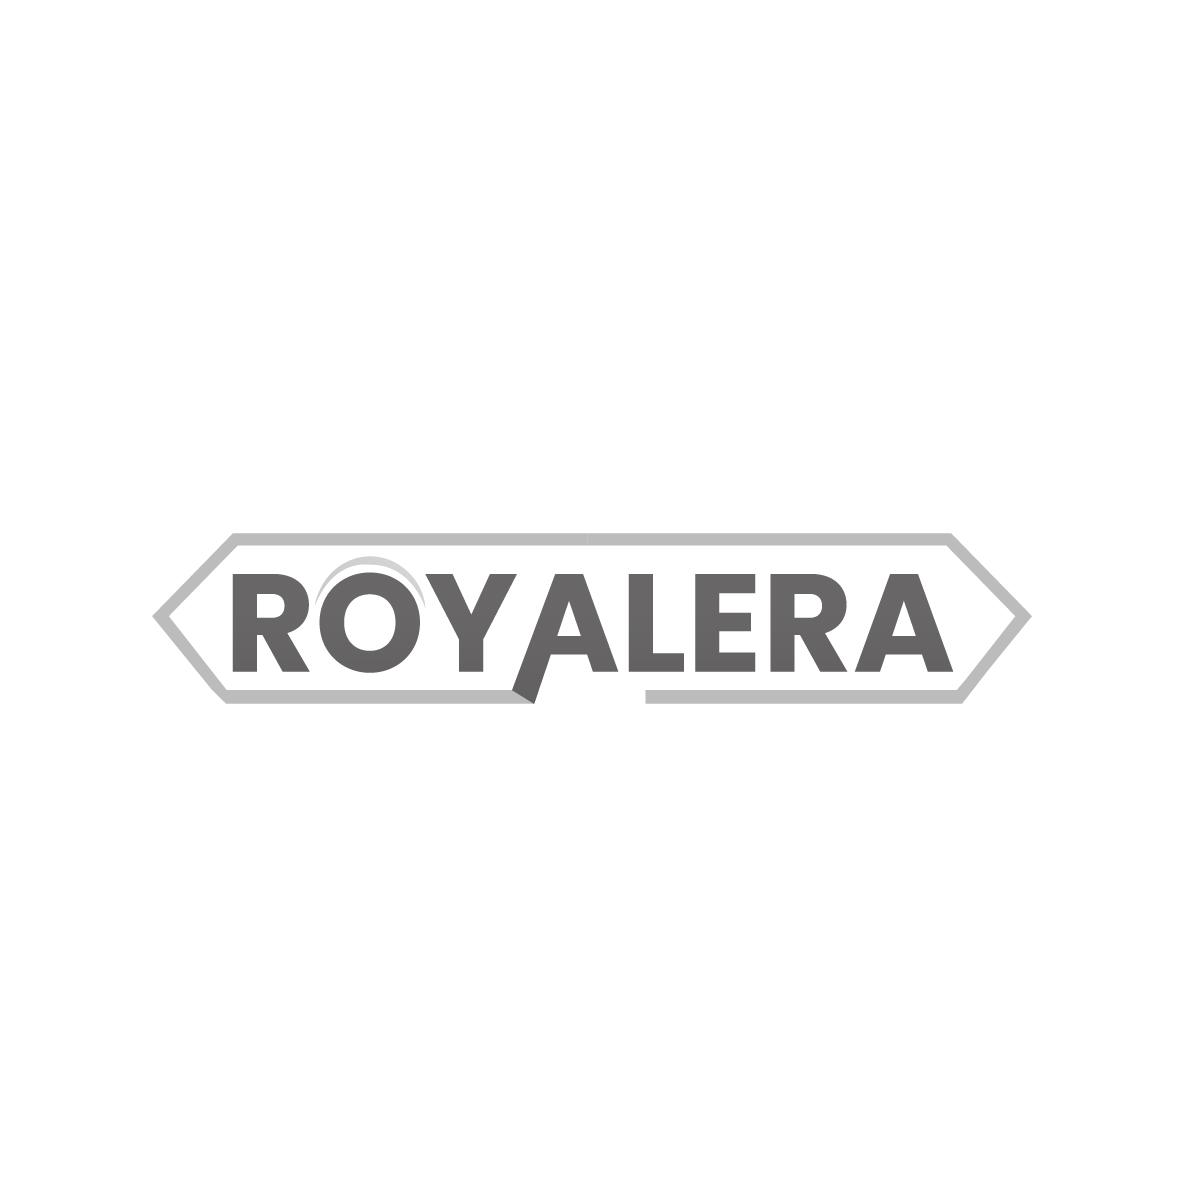 18类-箱包皮具ROYALERA商标转让